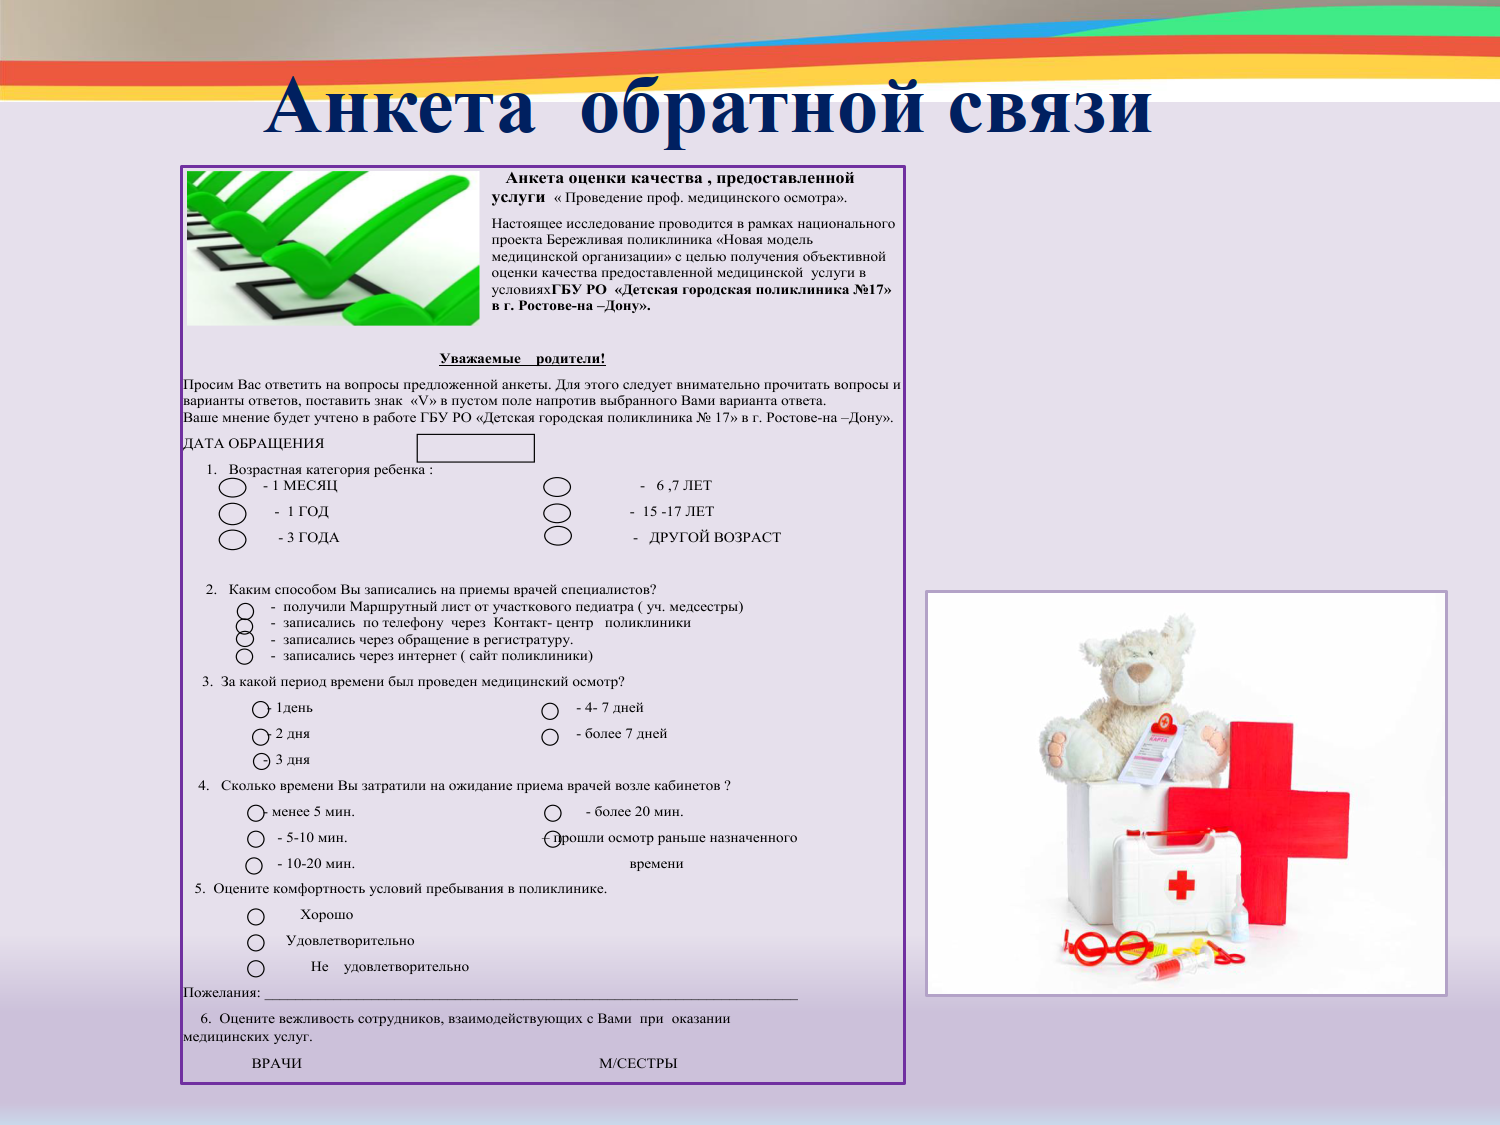 Правила приема грудничков в поликлинике - kpoxa.info